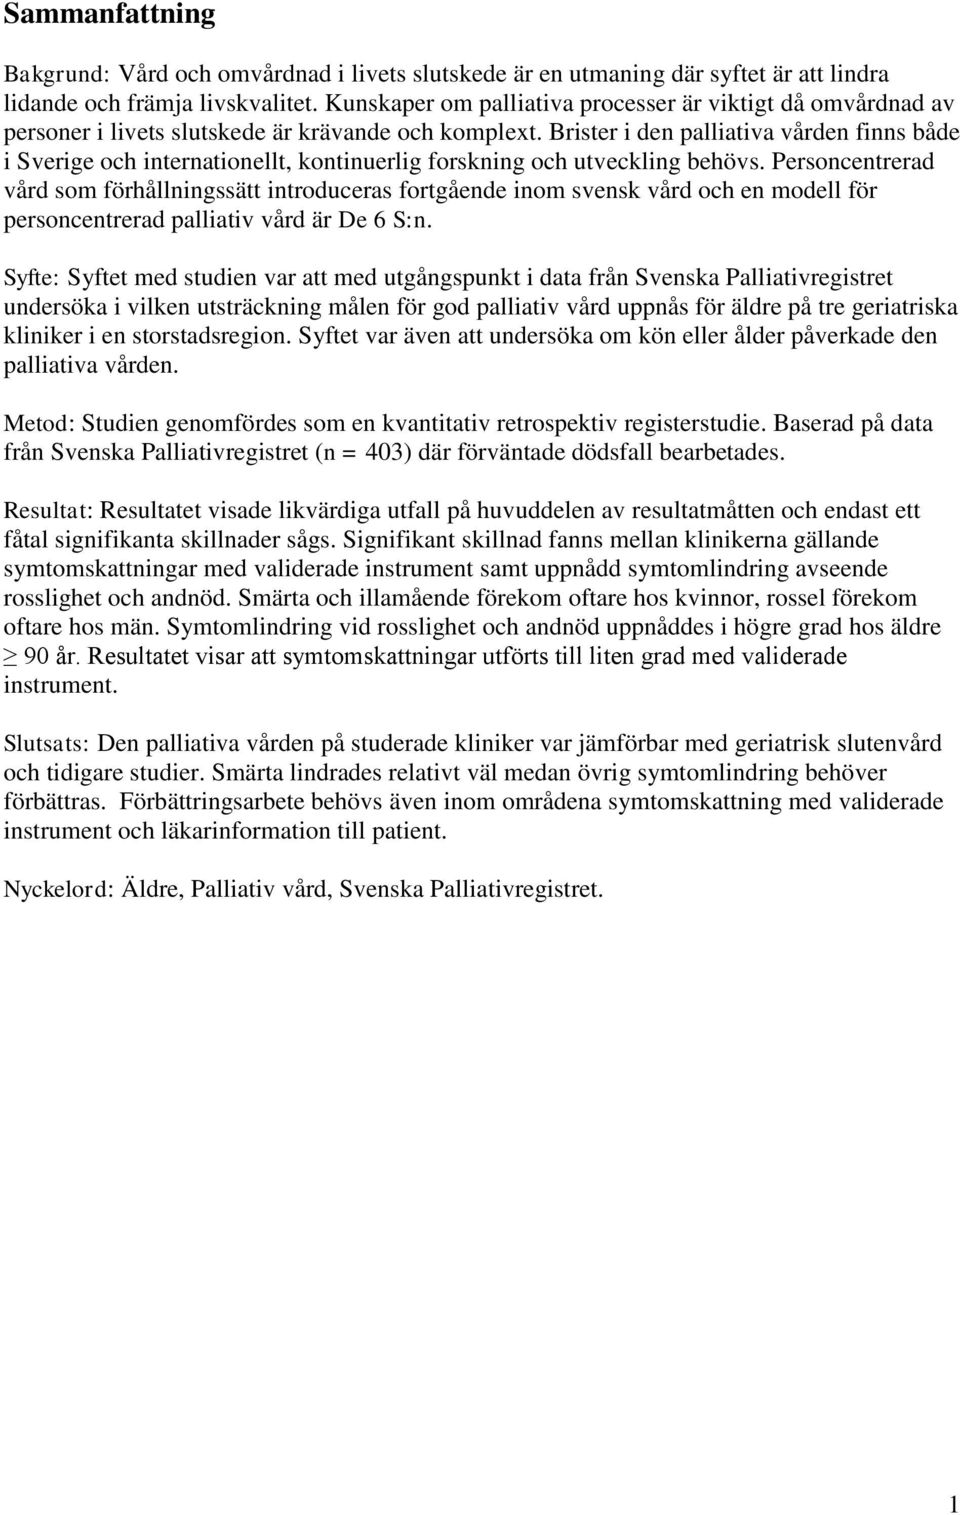 Brister i den palliativa vården finns både i Sverige och internationellt, kontinuerlig forskning och utveckling behövs.